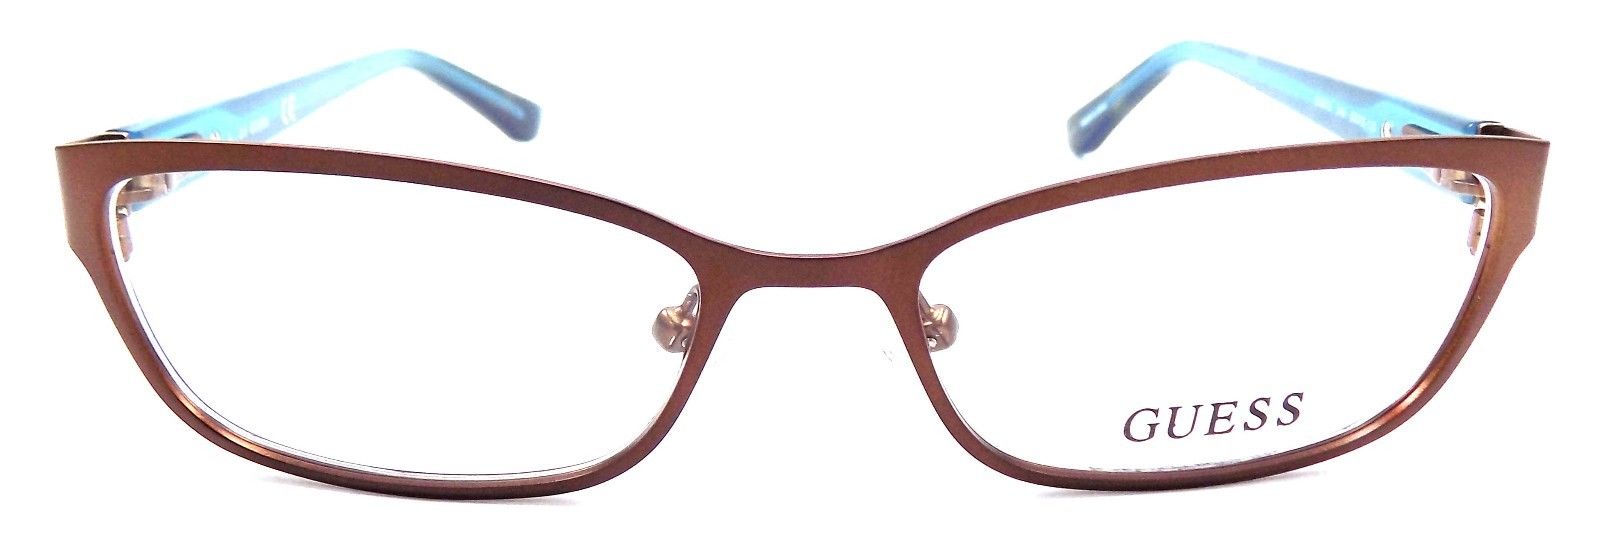 2-GUESS GU2515 049 Women's Eyeglasses Frames 50-16-135 Matte Dark Brown + CASE-664689713820-IKSpecs